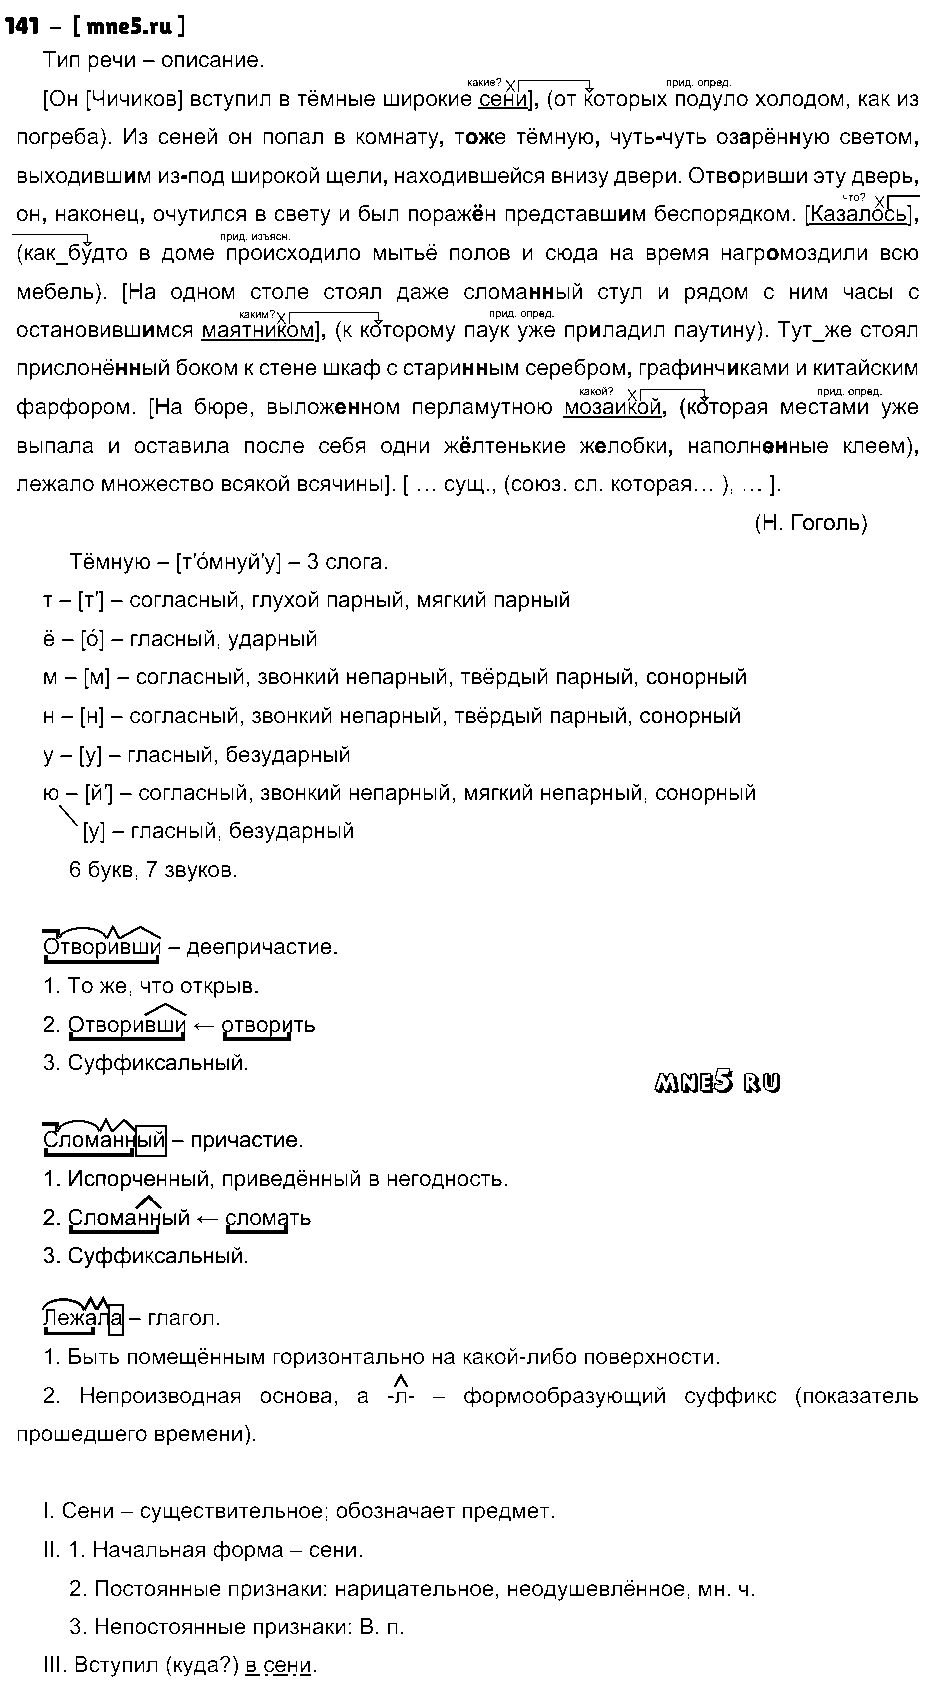 ГДЗ Русский язык 9 класс - 141